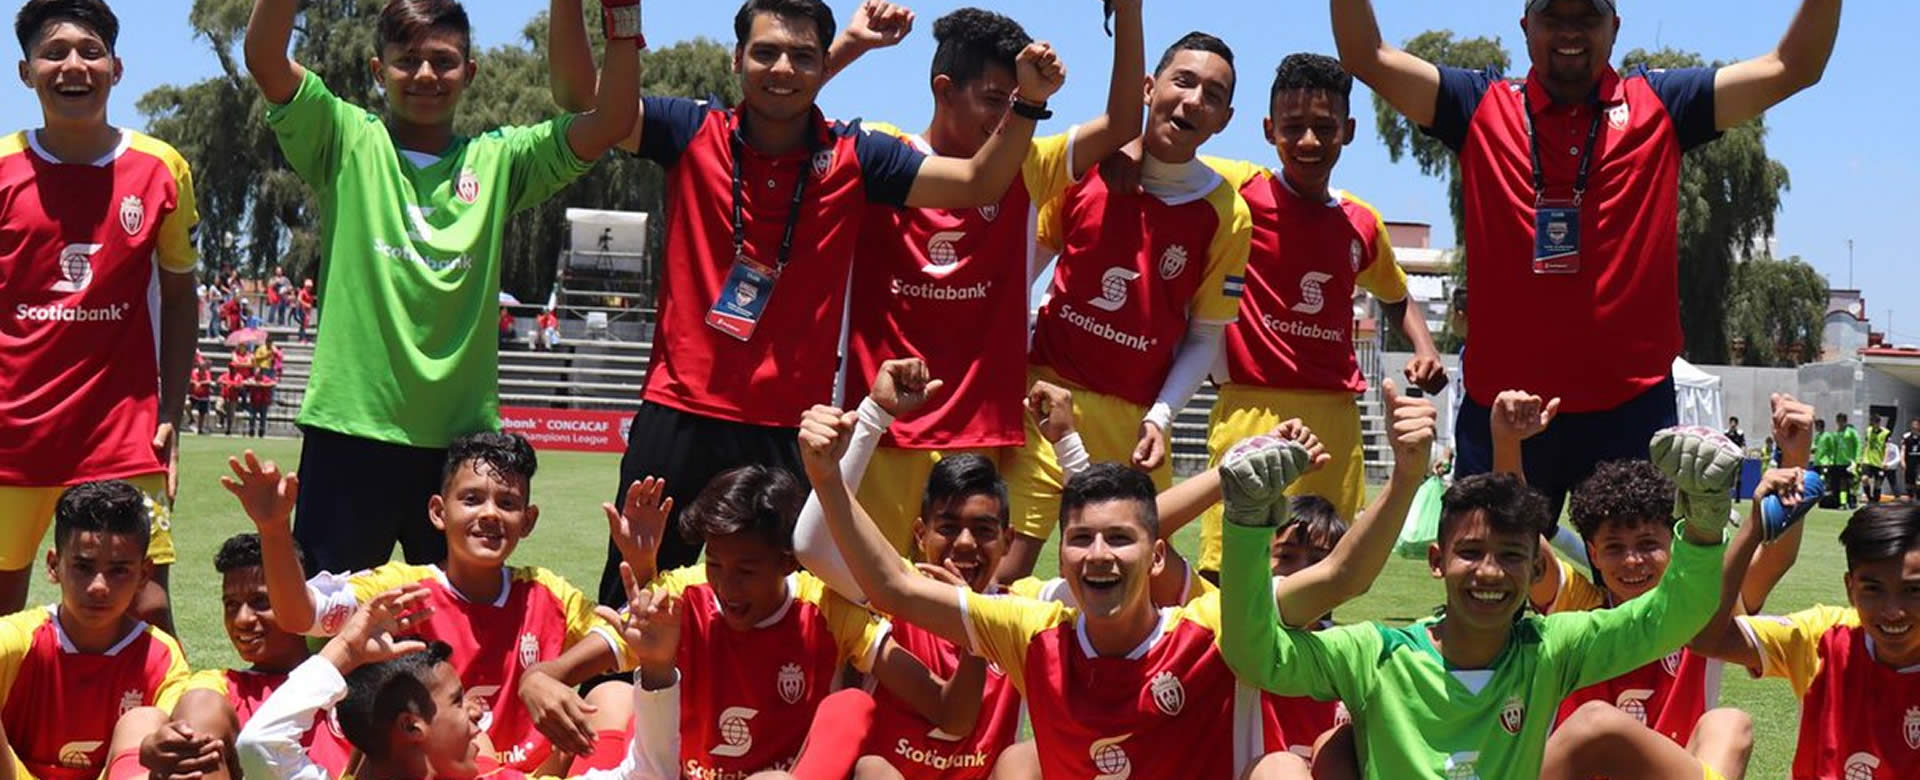 Rosario felicita al equipo del Real Estelí (Sub-13), por avanzar a cuartos de final en la CONCACAF 